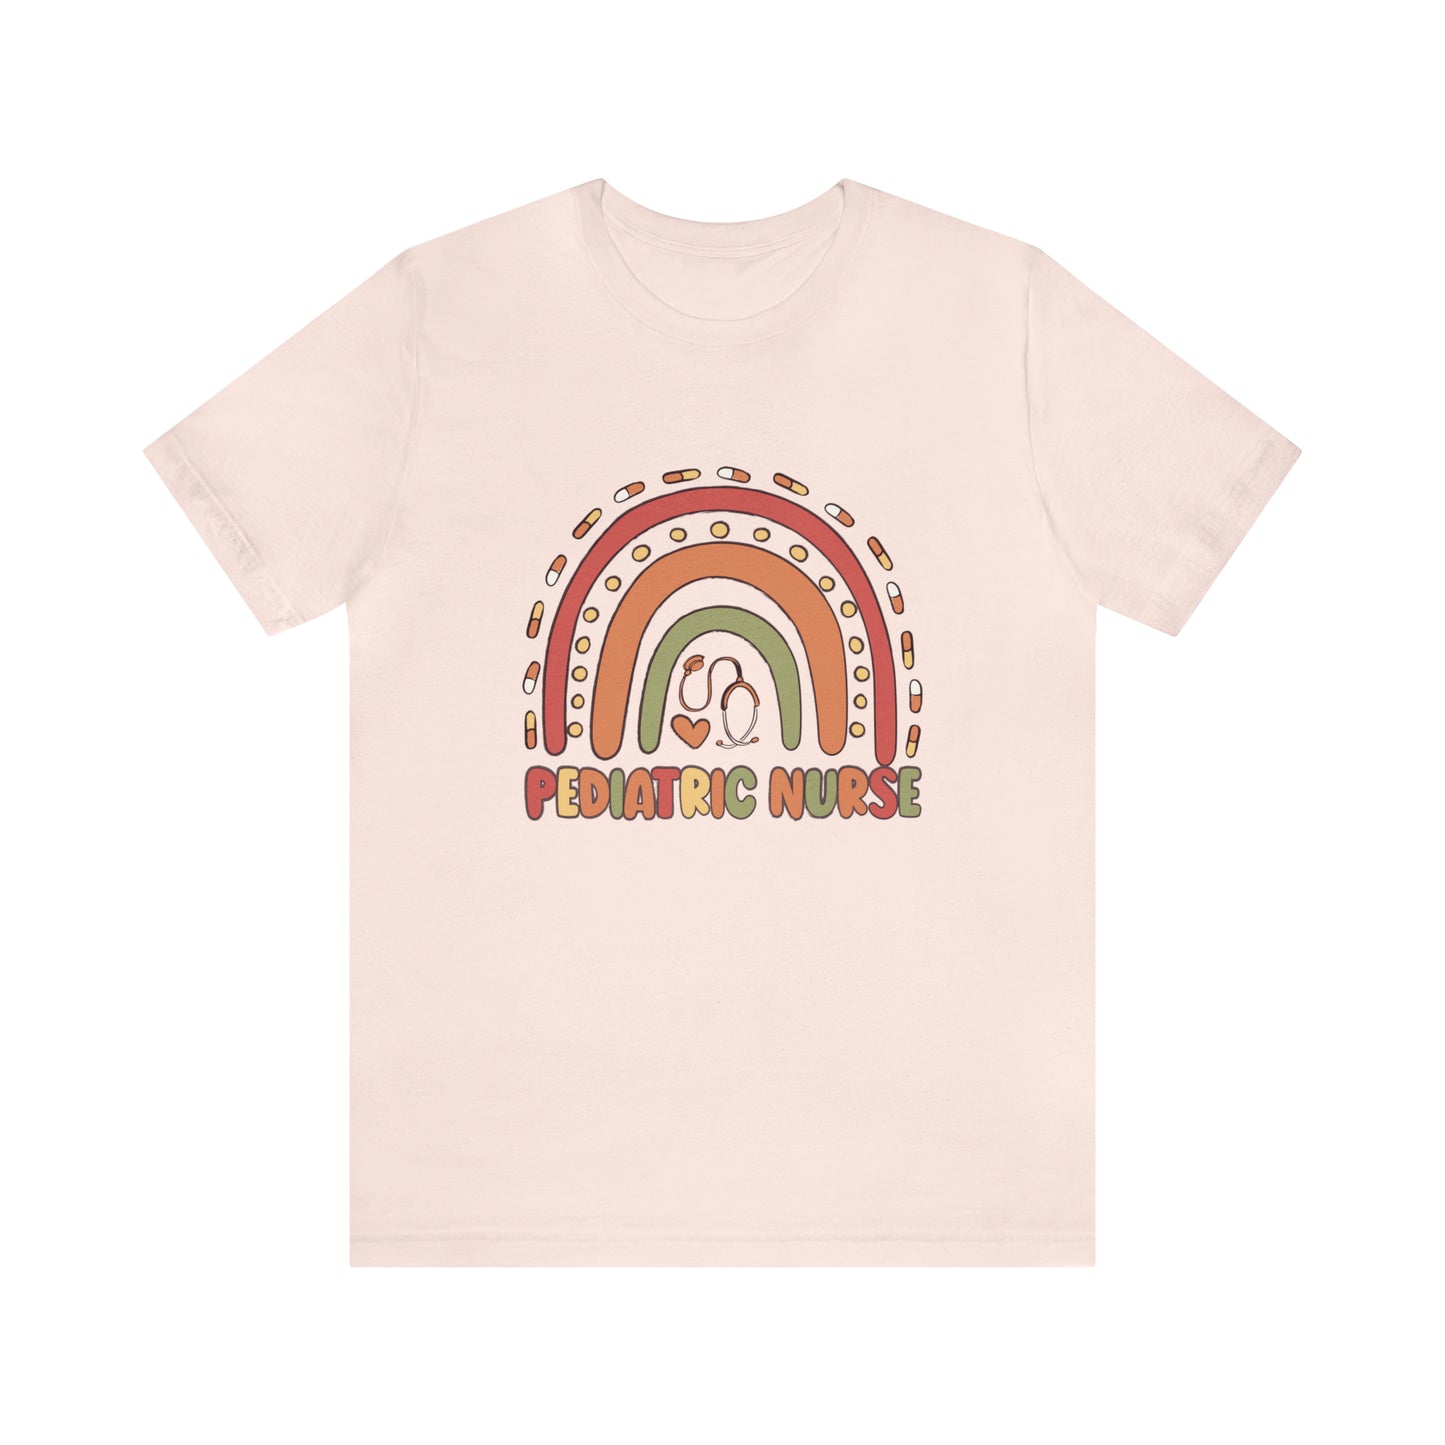 Pediatric Nurse - Short Sleeve T-Shirt